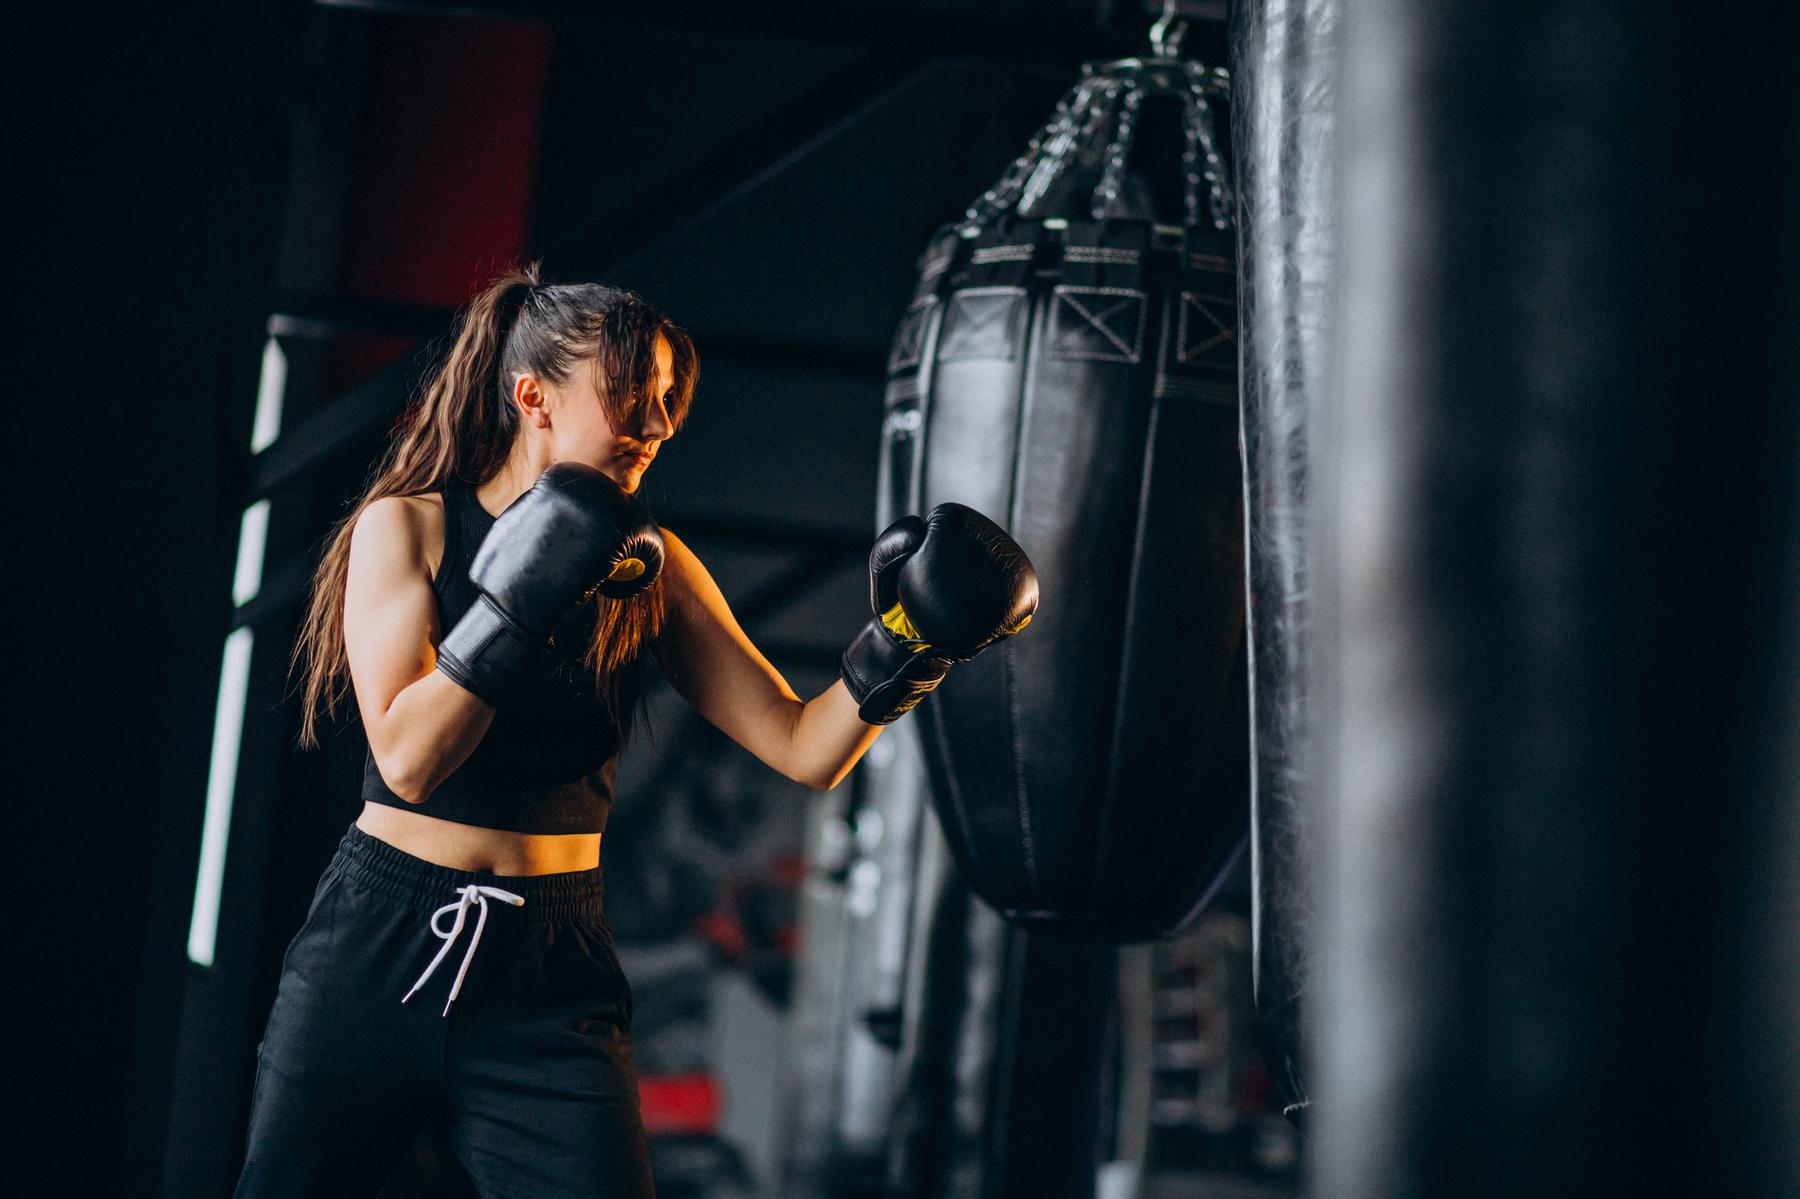 Boxe: treino físico completo e desafiador para a saúde equilibrada - Freepik